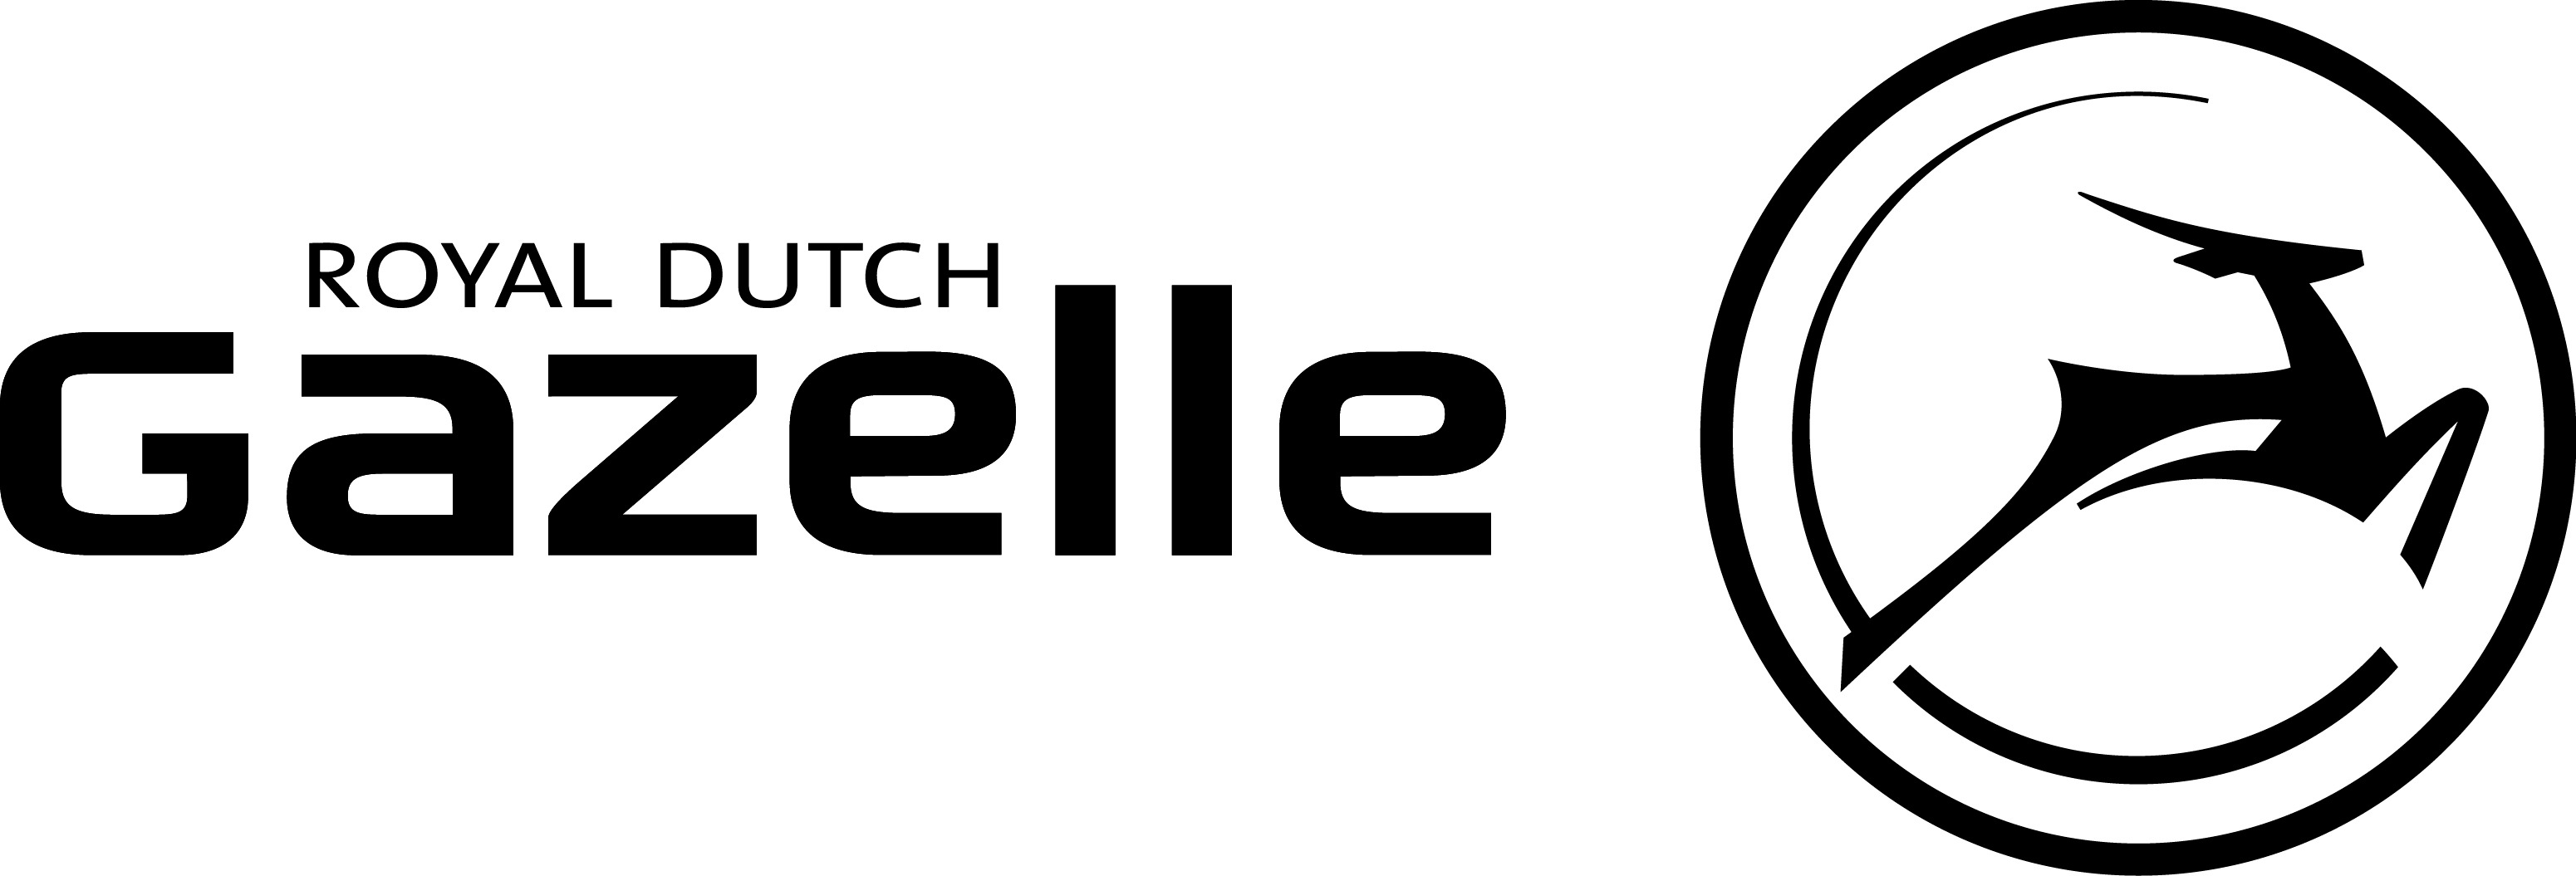 logo for Gazelle brand